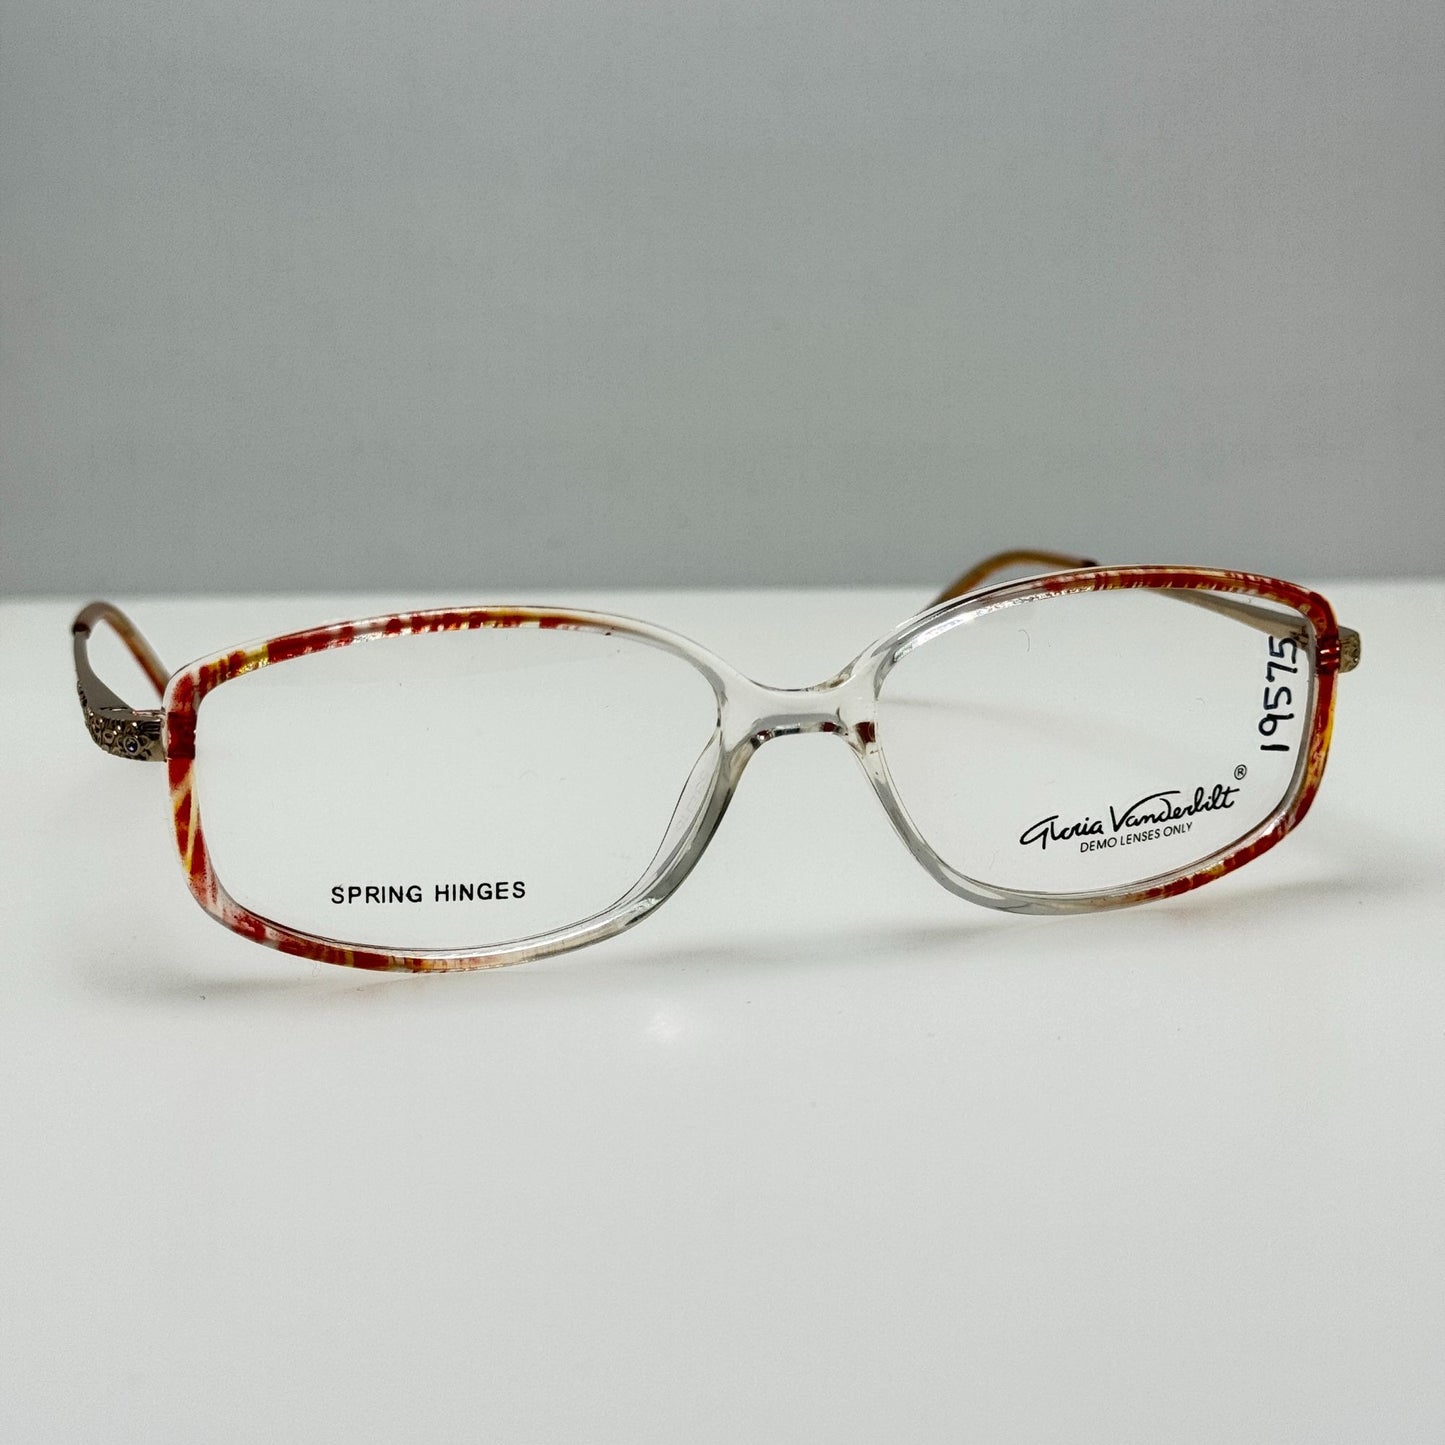 Gloria Vanderbilt Eyeglasses Eye Glasses Frames GV 768 230 53-15-135